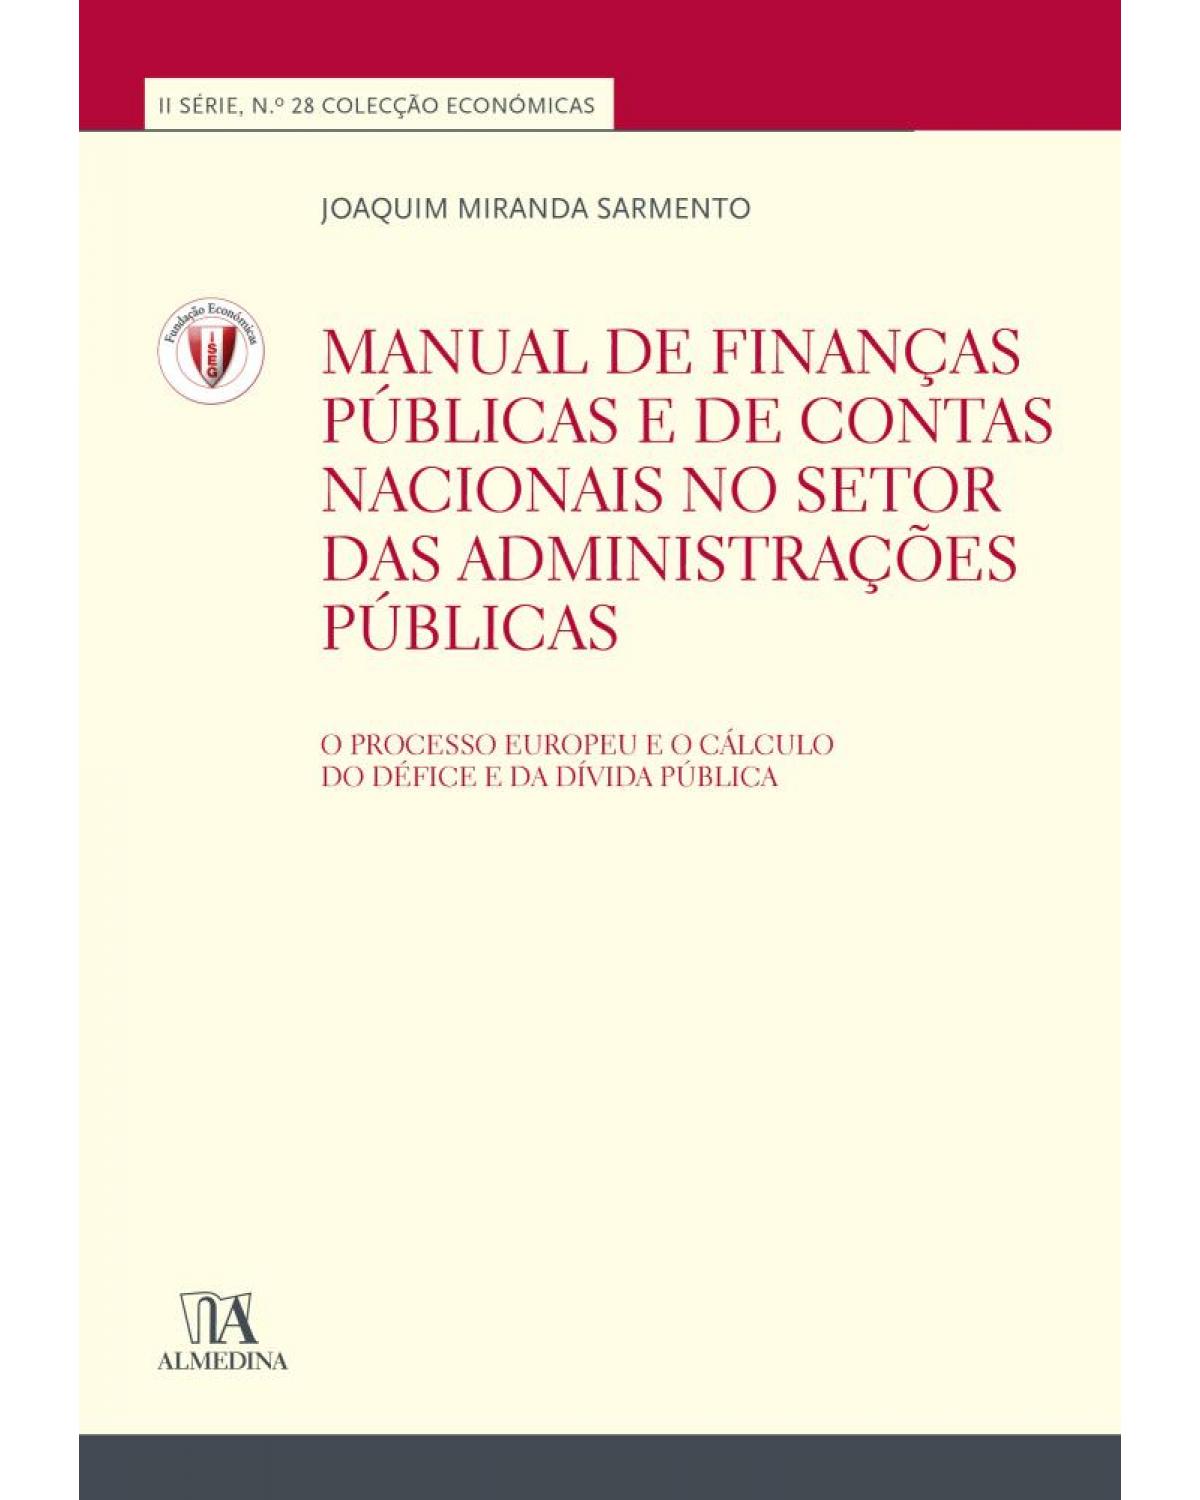 Manual de finanças públicas e de contas nacionais no setor das administrações públicas - 1ª Edição | 2017